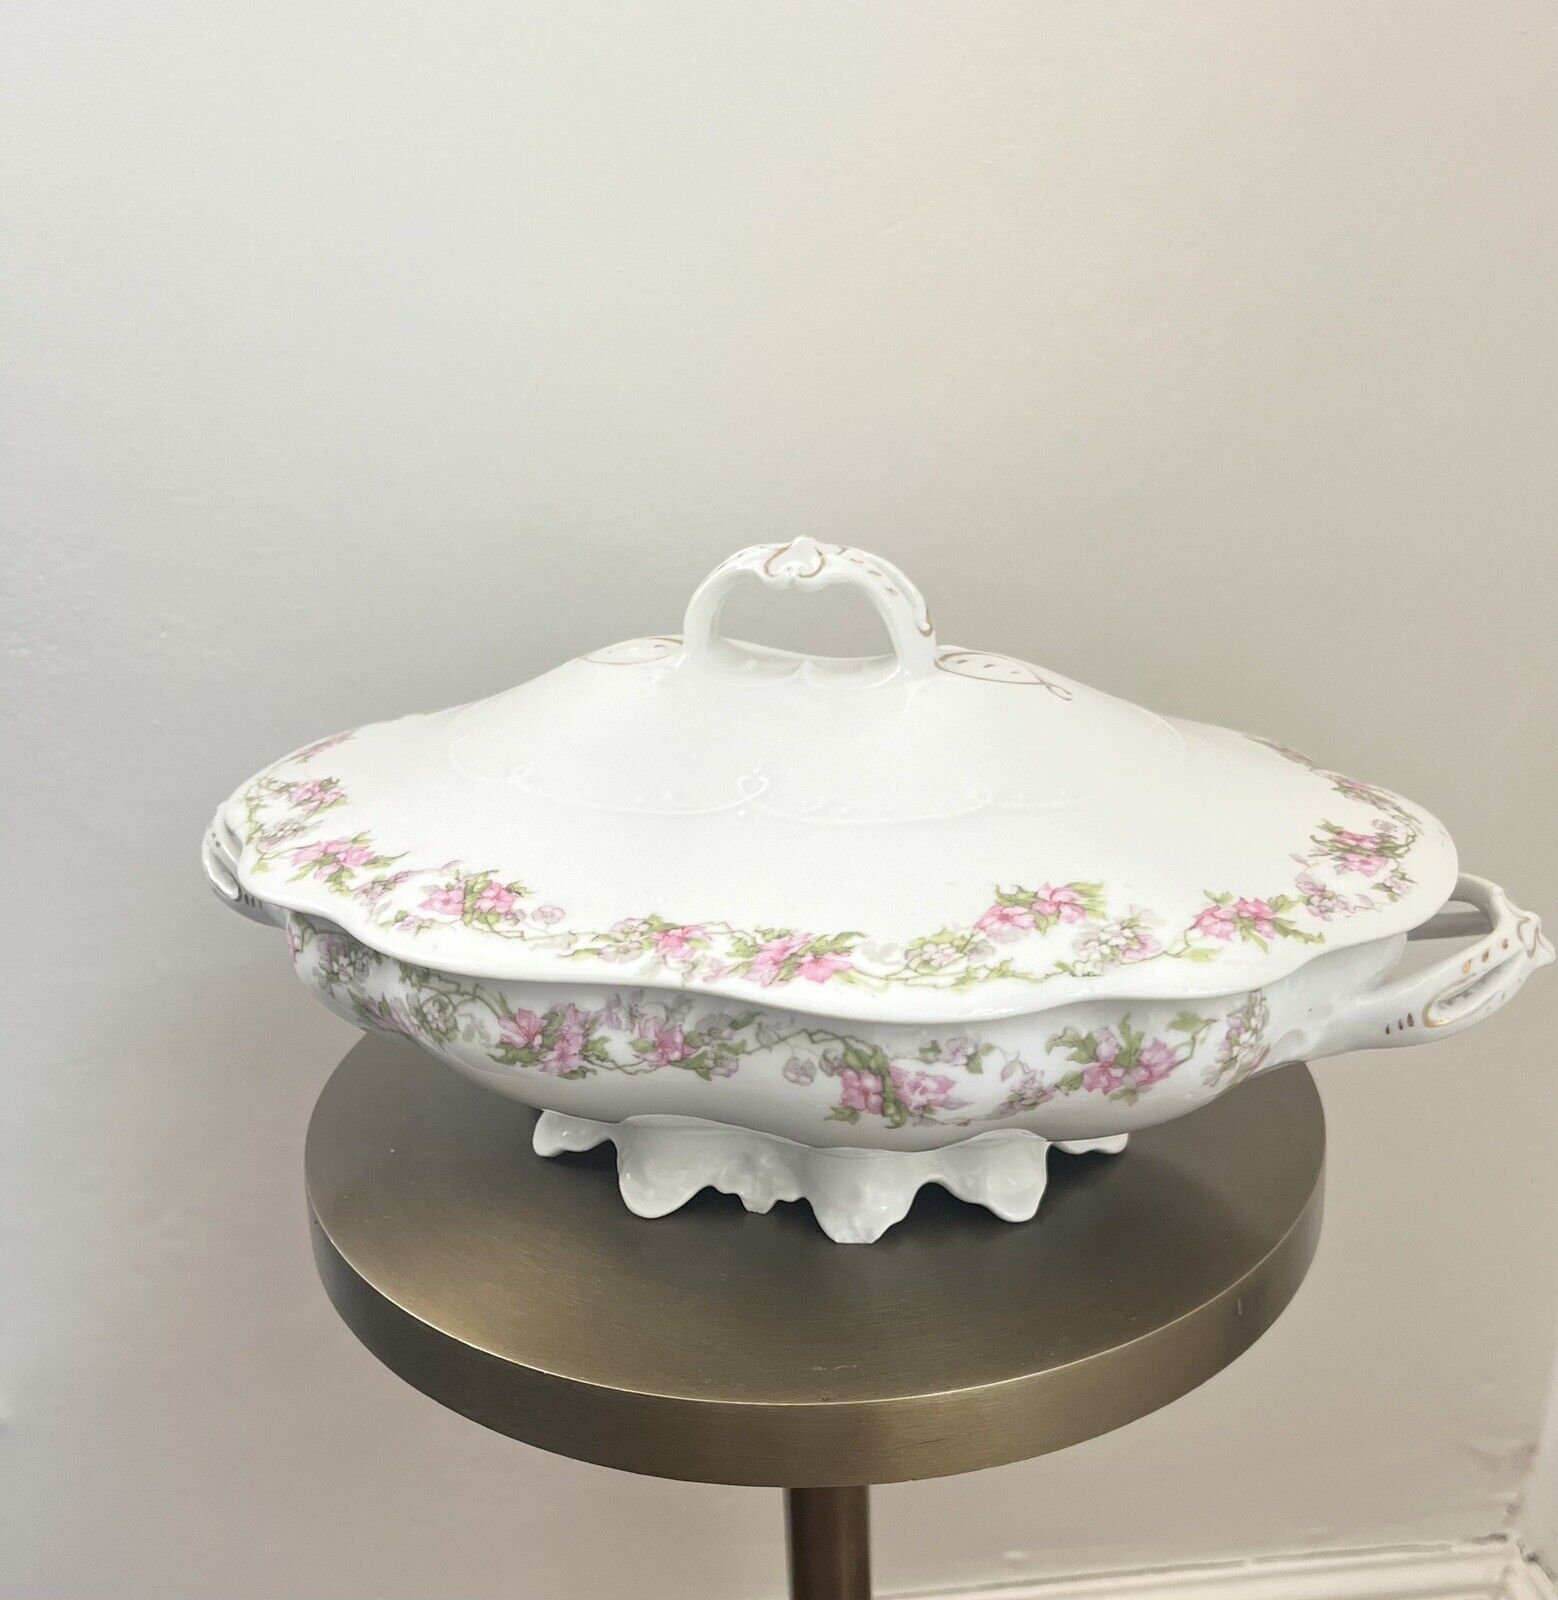 Antique Porcelain Serving Bowl, MZ Austria Pink Floral Roses